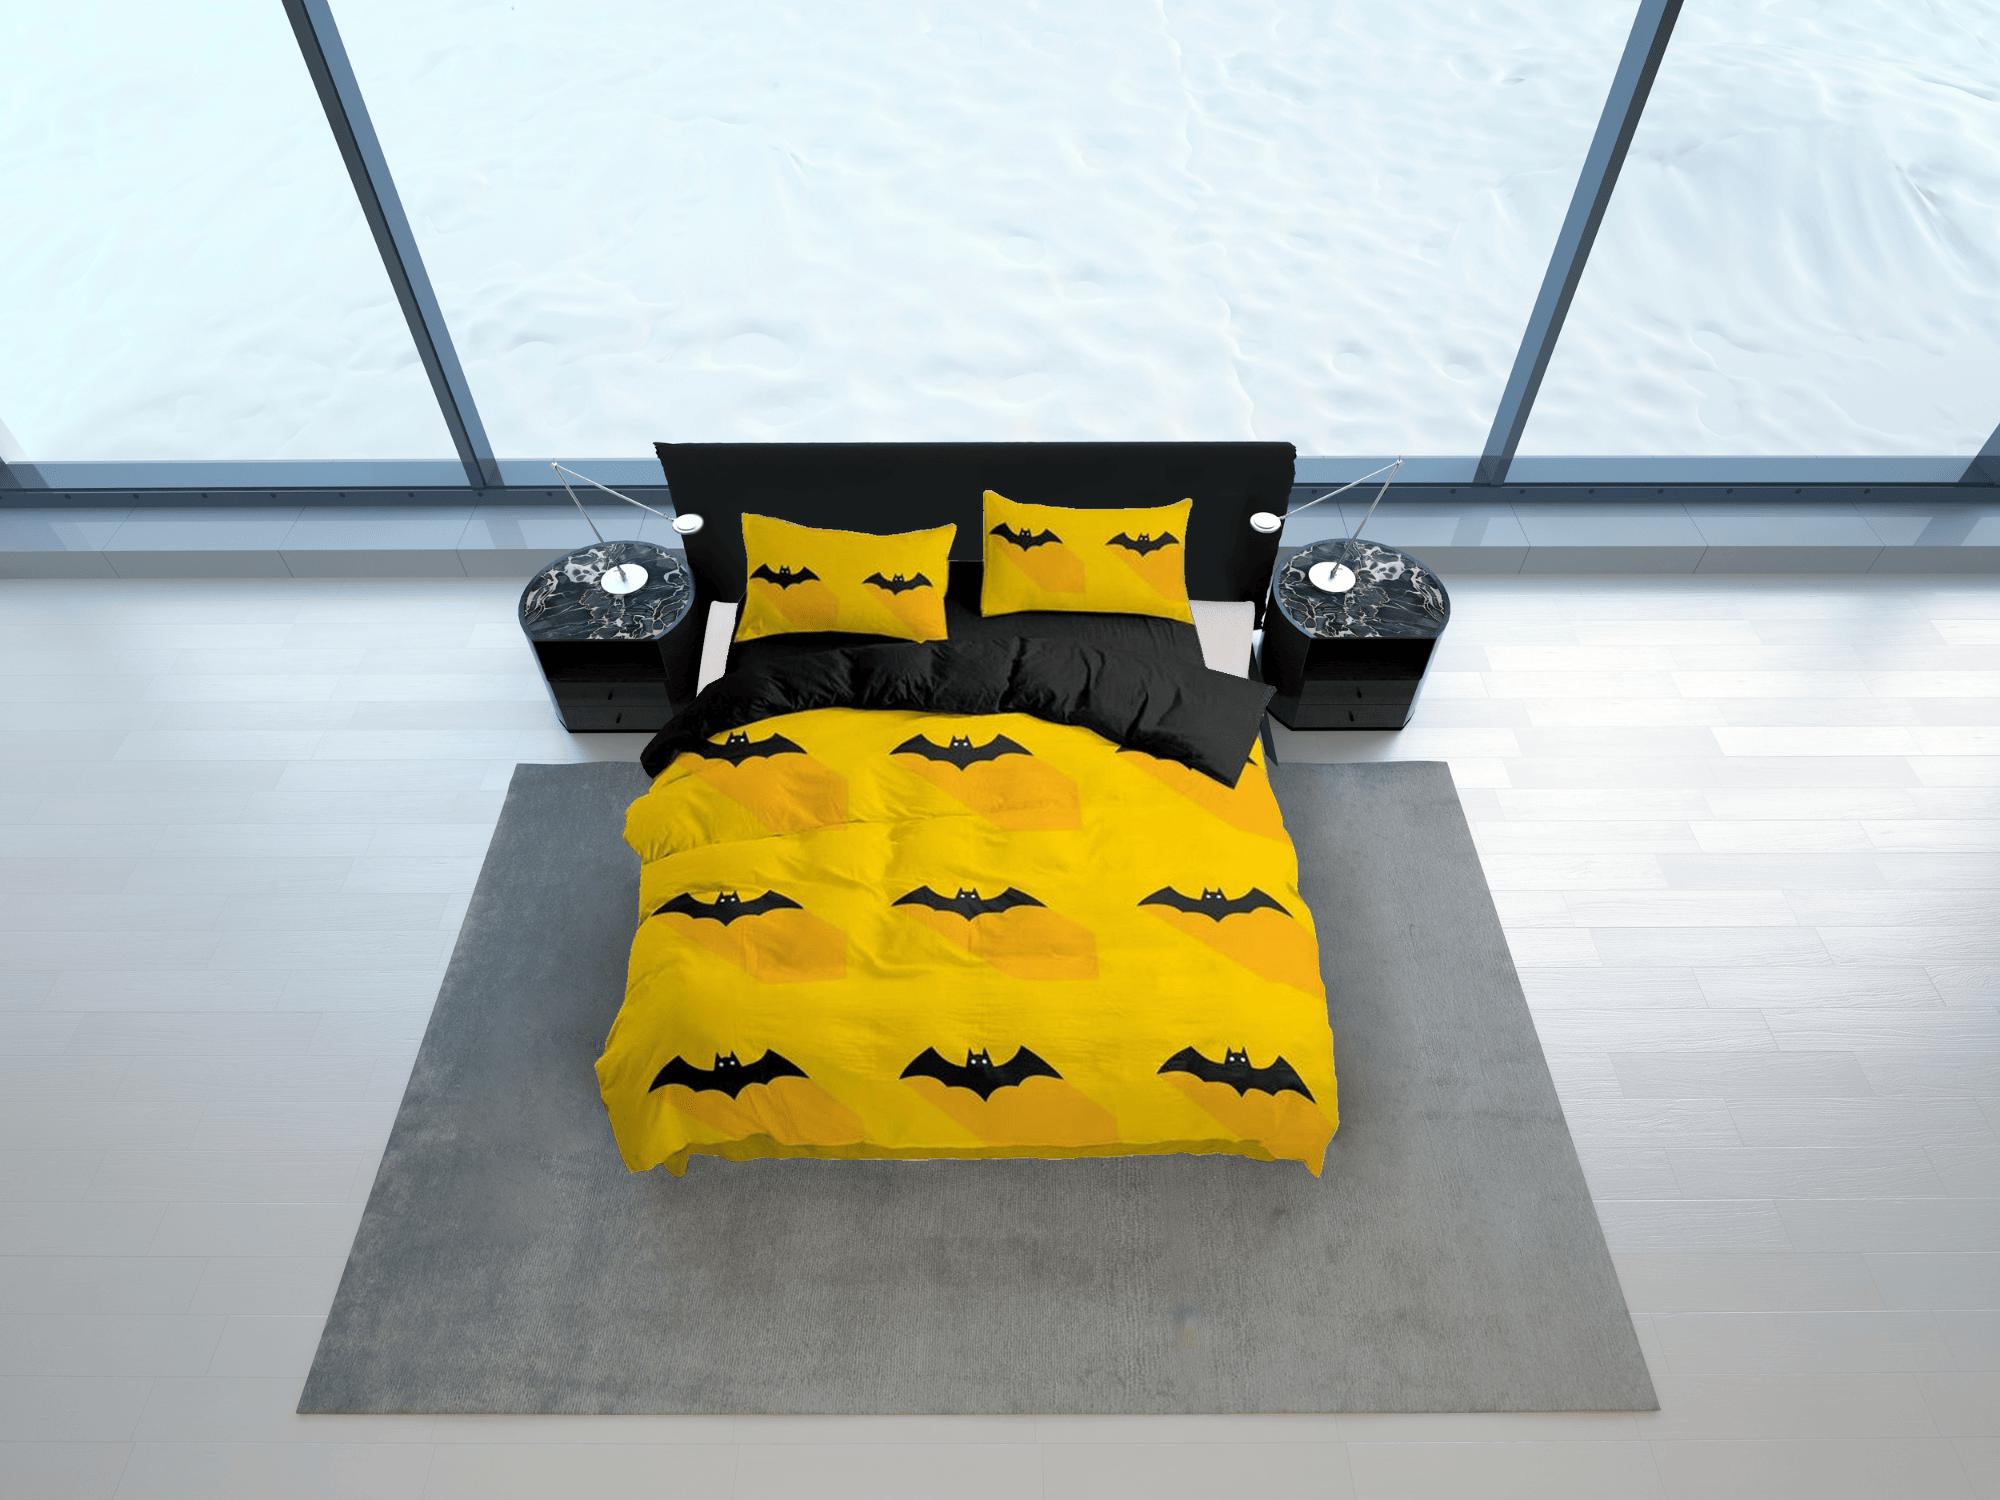 daintyduvet Bat halloween full size bedding & pillowcase, yellow duvet cover set dorm bedding, halloween decor, nursery toddler bedding, halloween gift